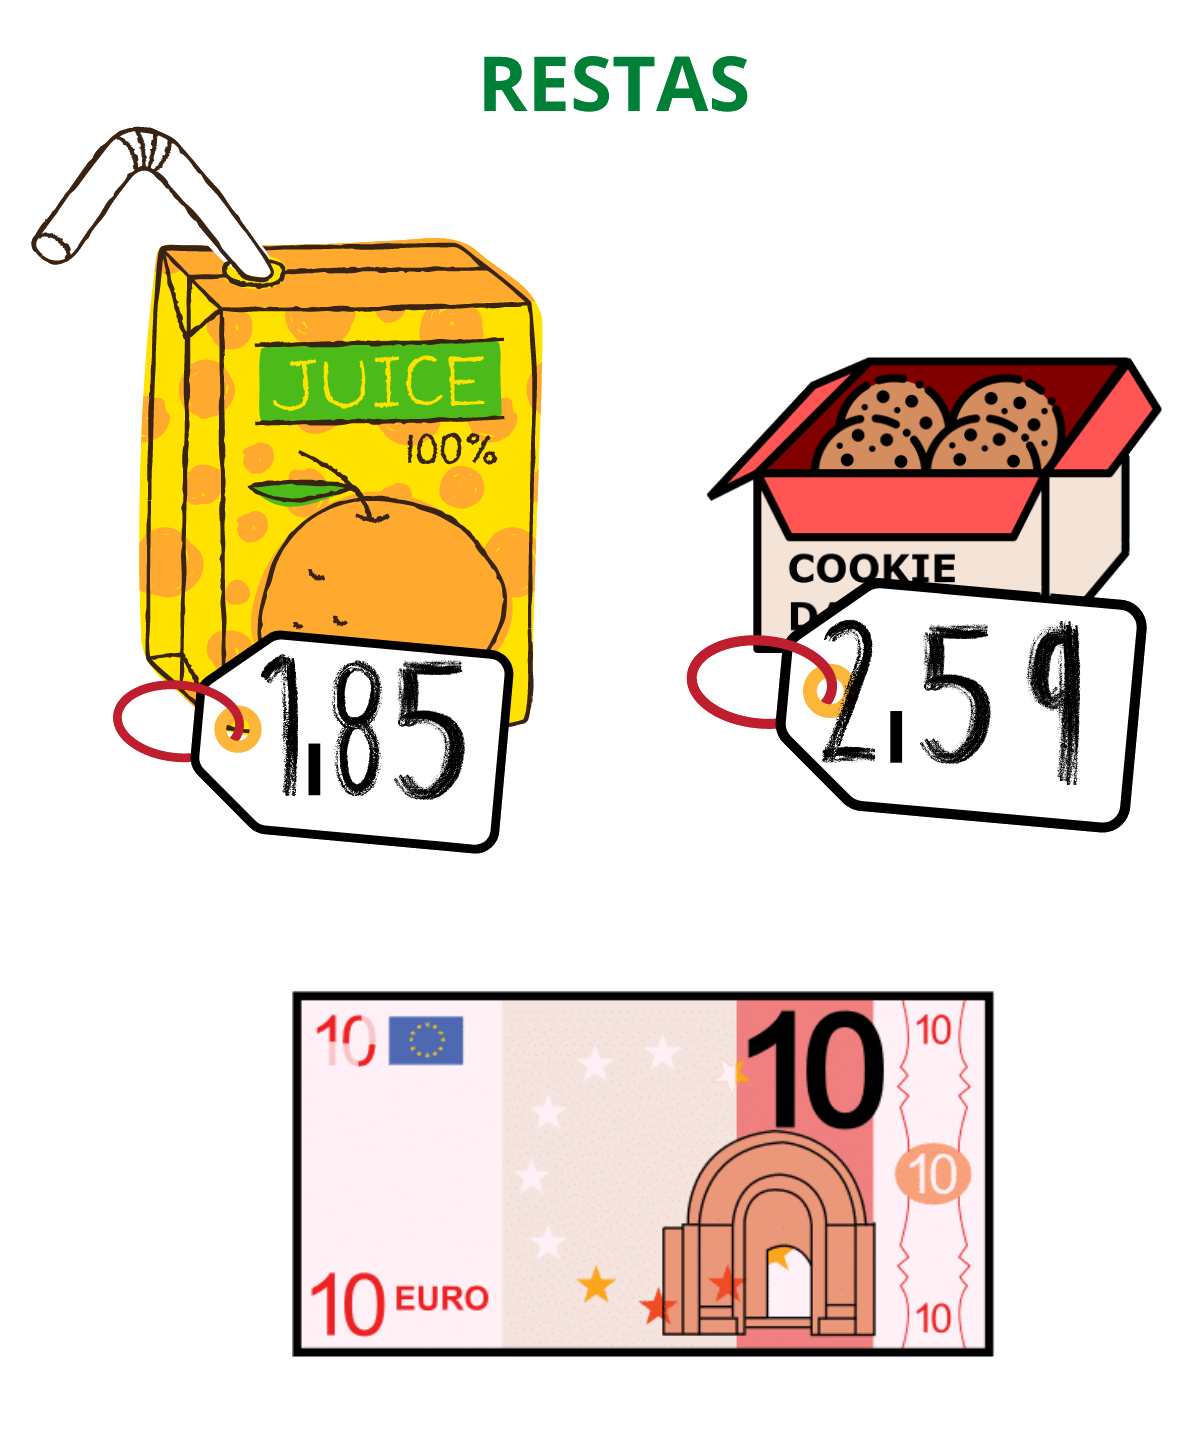 Imagen de dos productos con su precio y un billete de 10 euros en la parte inferior.